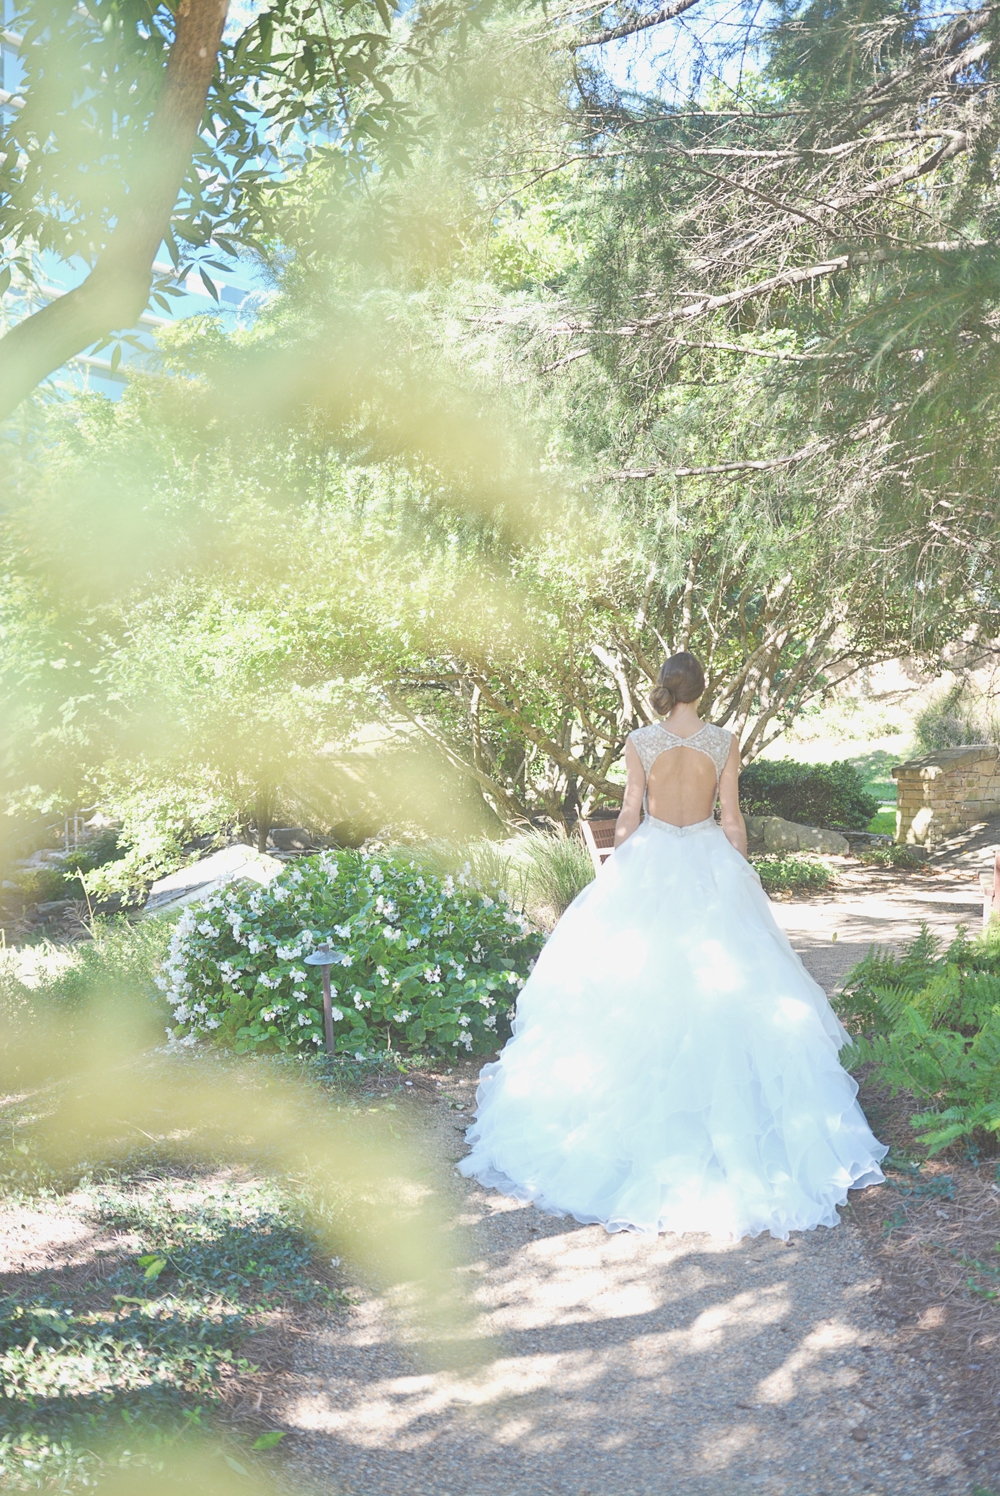 Wedding at Villa Christina at Hyatt Perimiter - Anya Bridal Catalog - Six Hearts Photography013